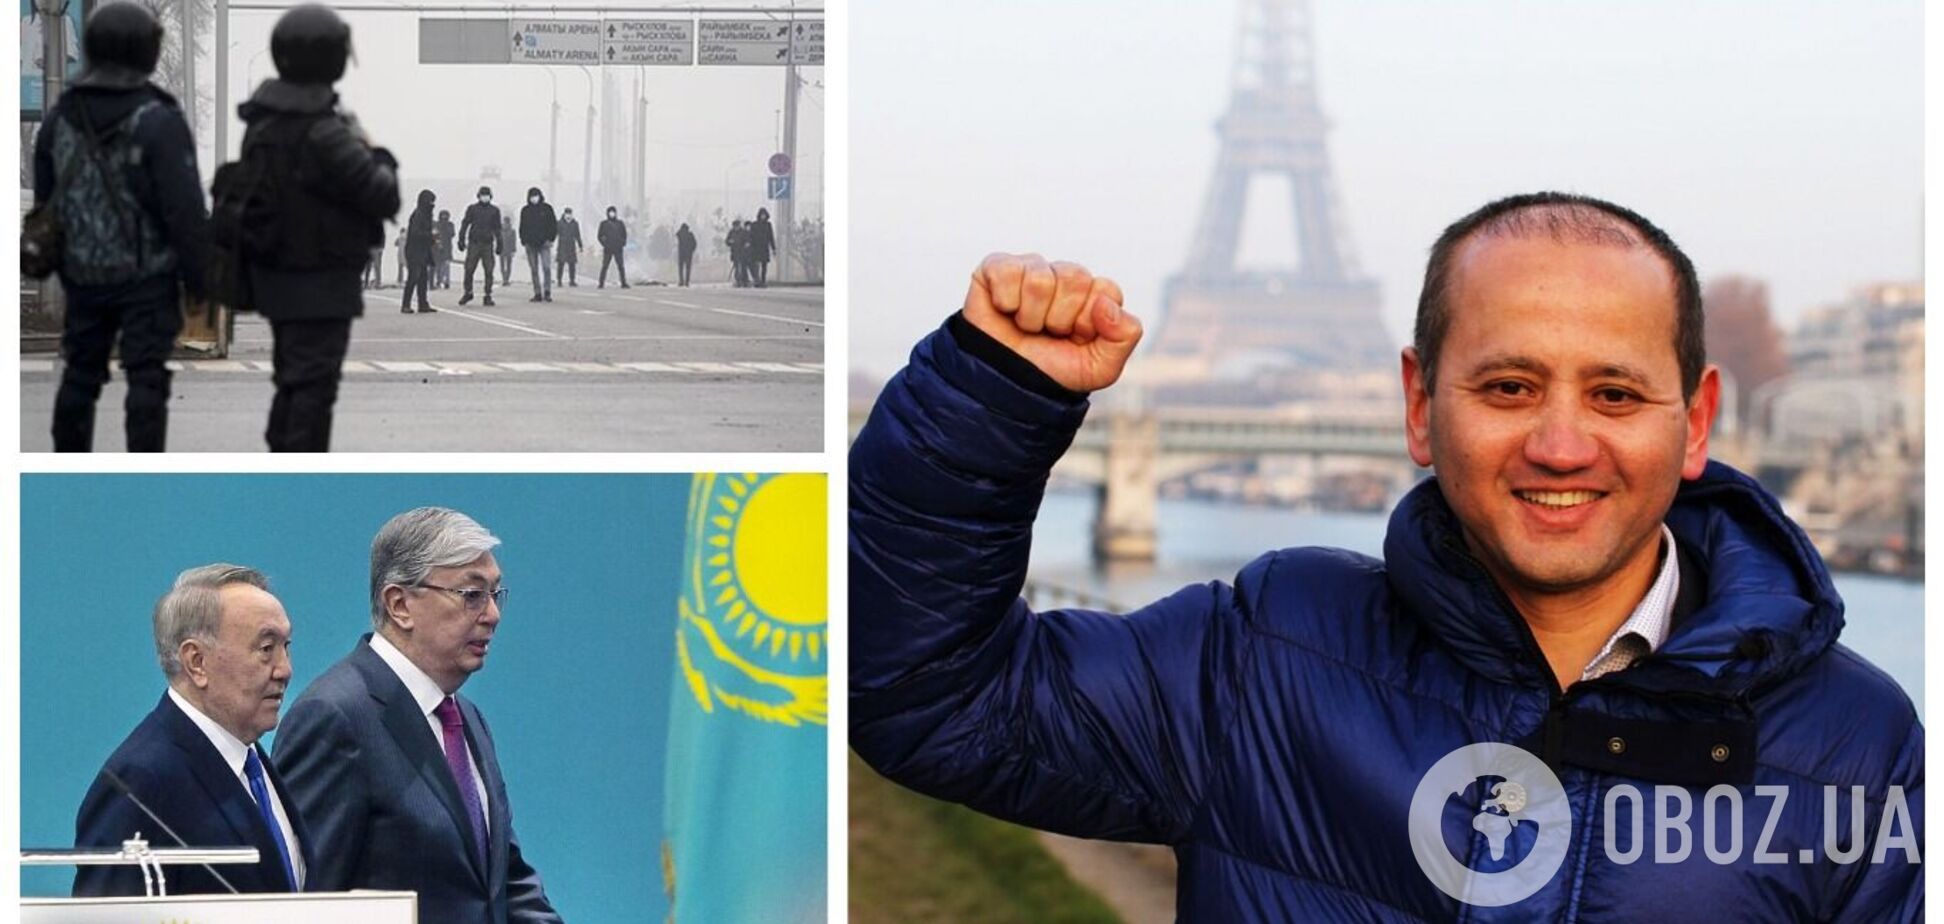 Самопровозглашенный лидер протестов в Казахстане призвал США и ЕС ввести санкции